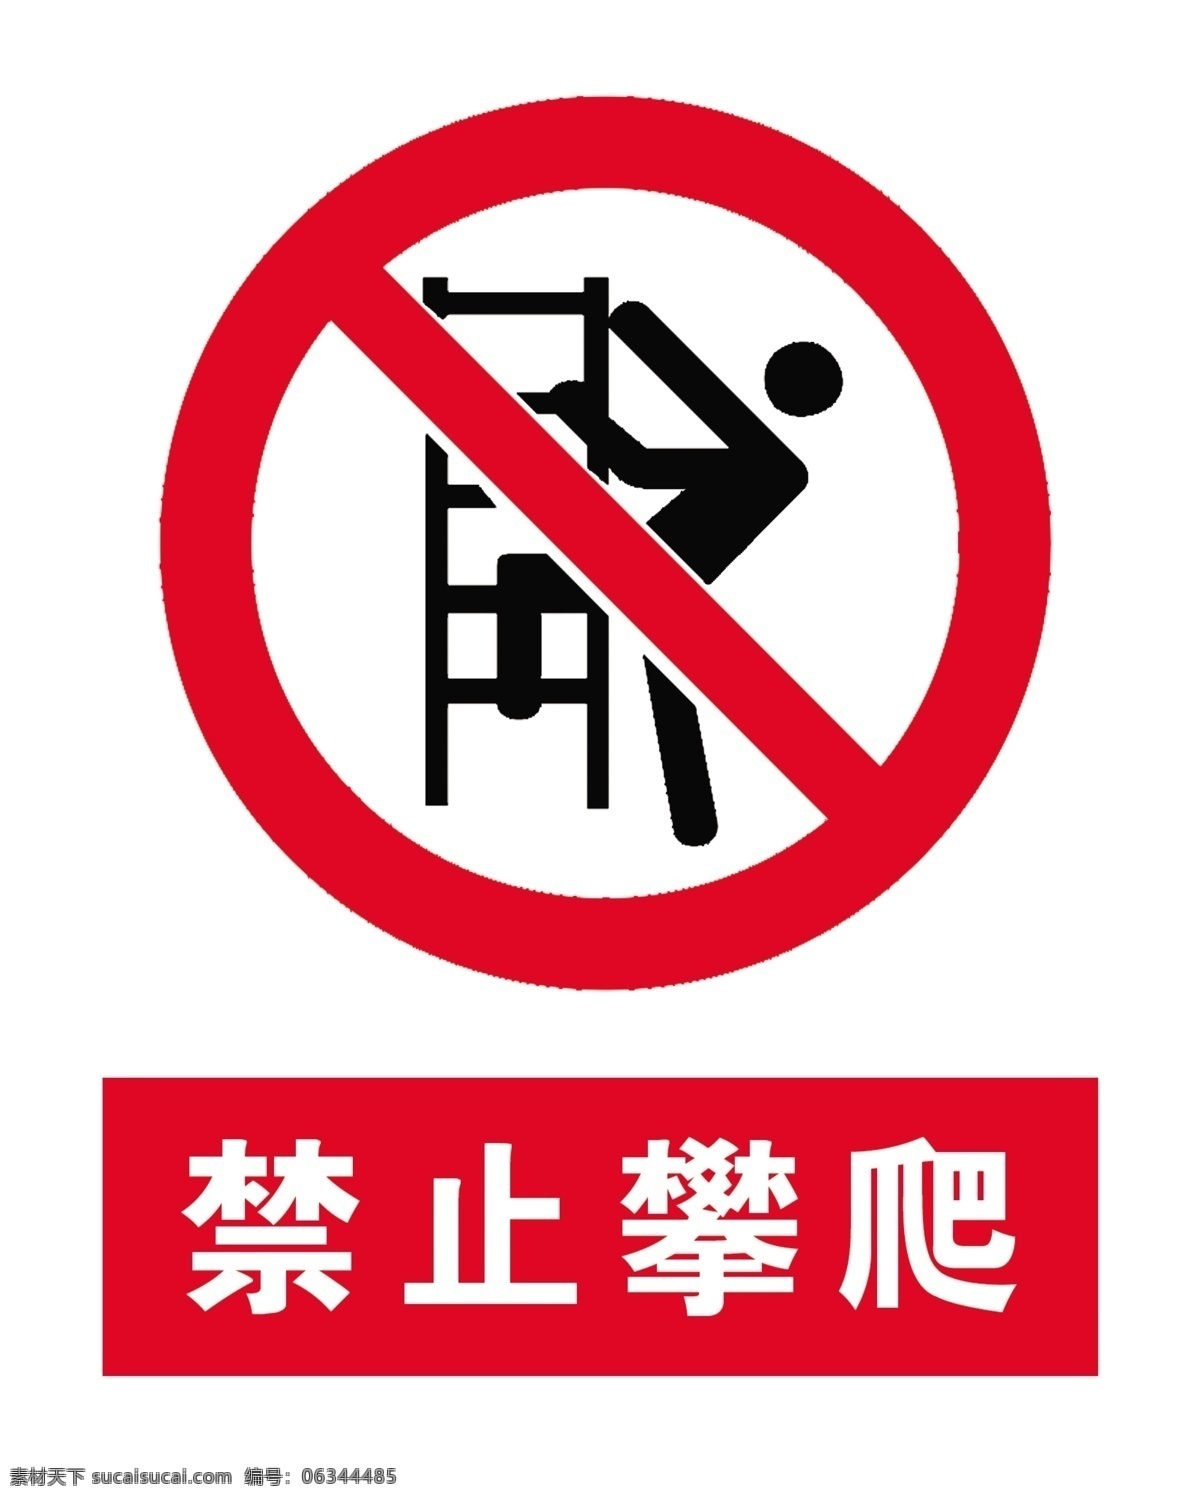 禁止攀爬标识 禁止攀爬标志 禁止攀爬图片 禁止攀爬图案 禁止攀爬标牌